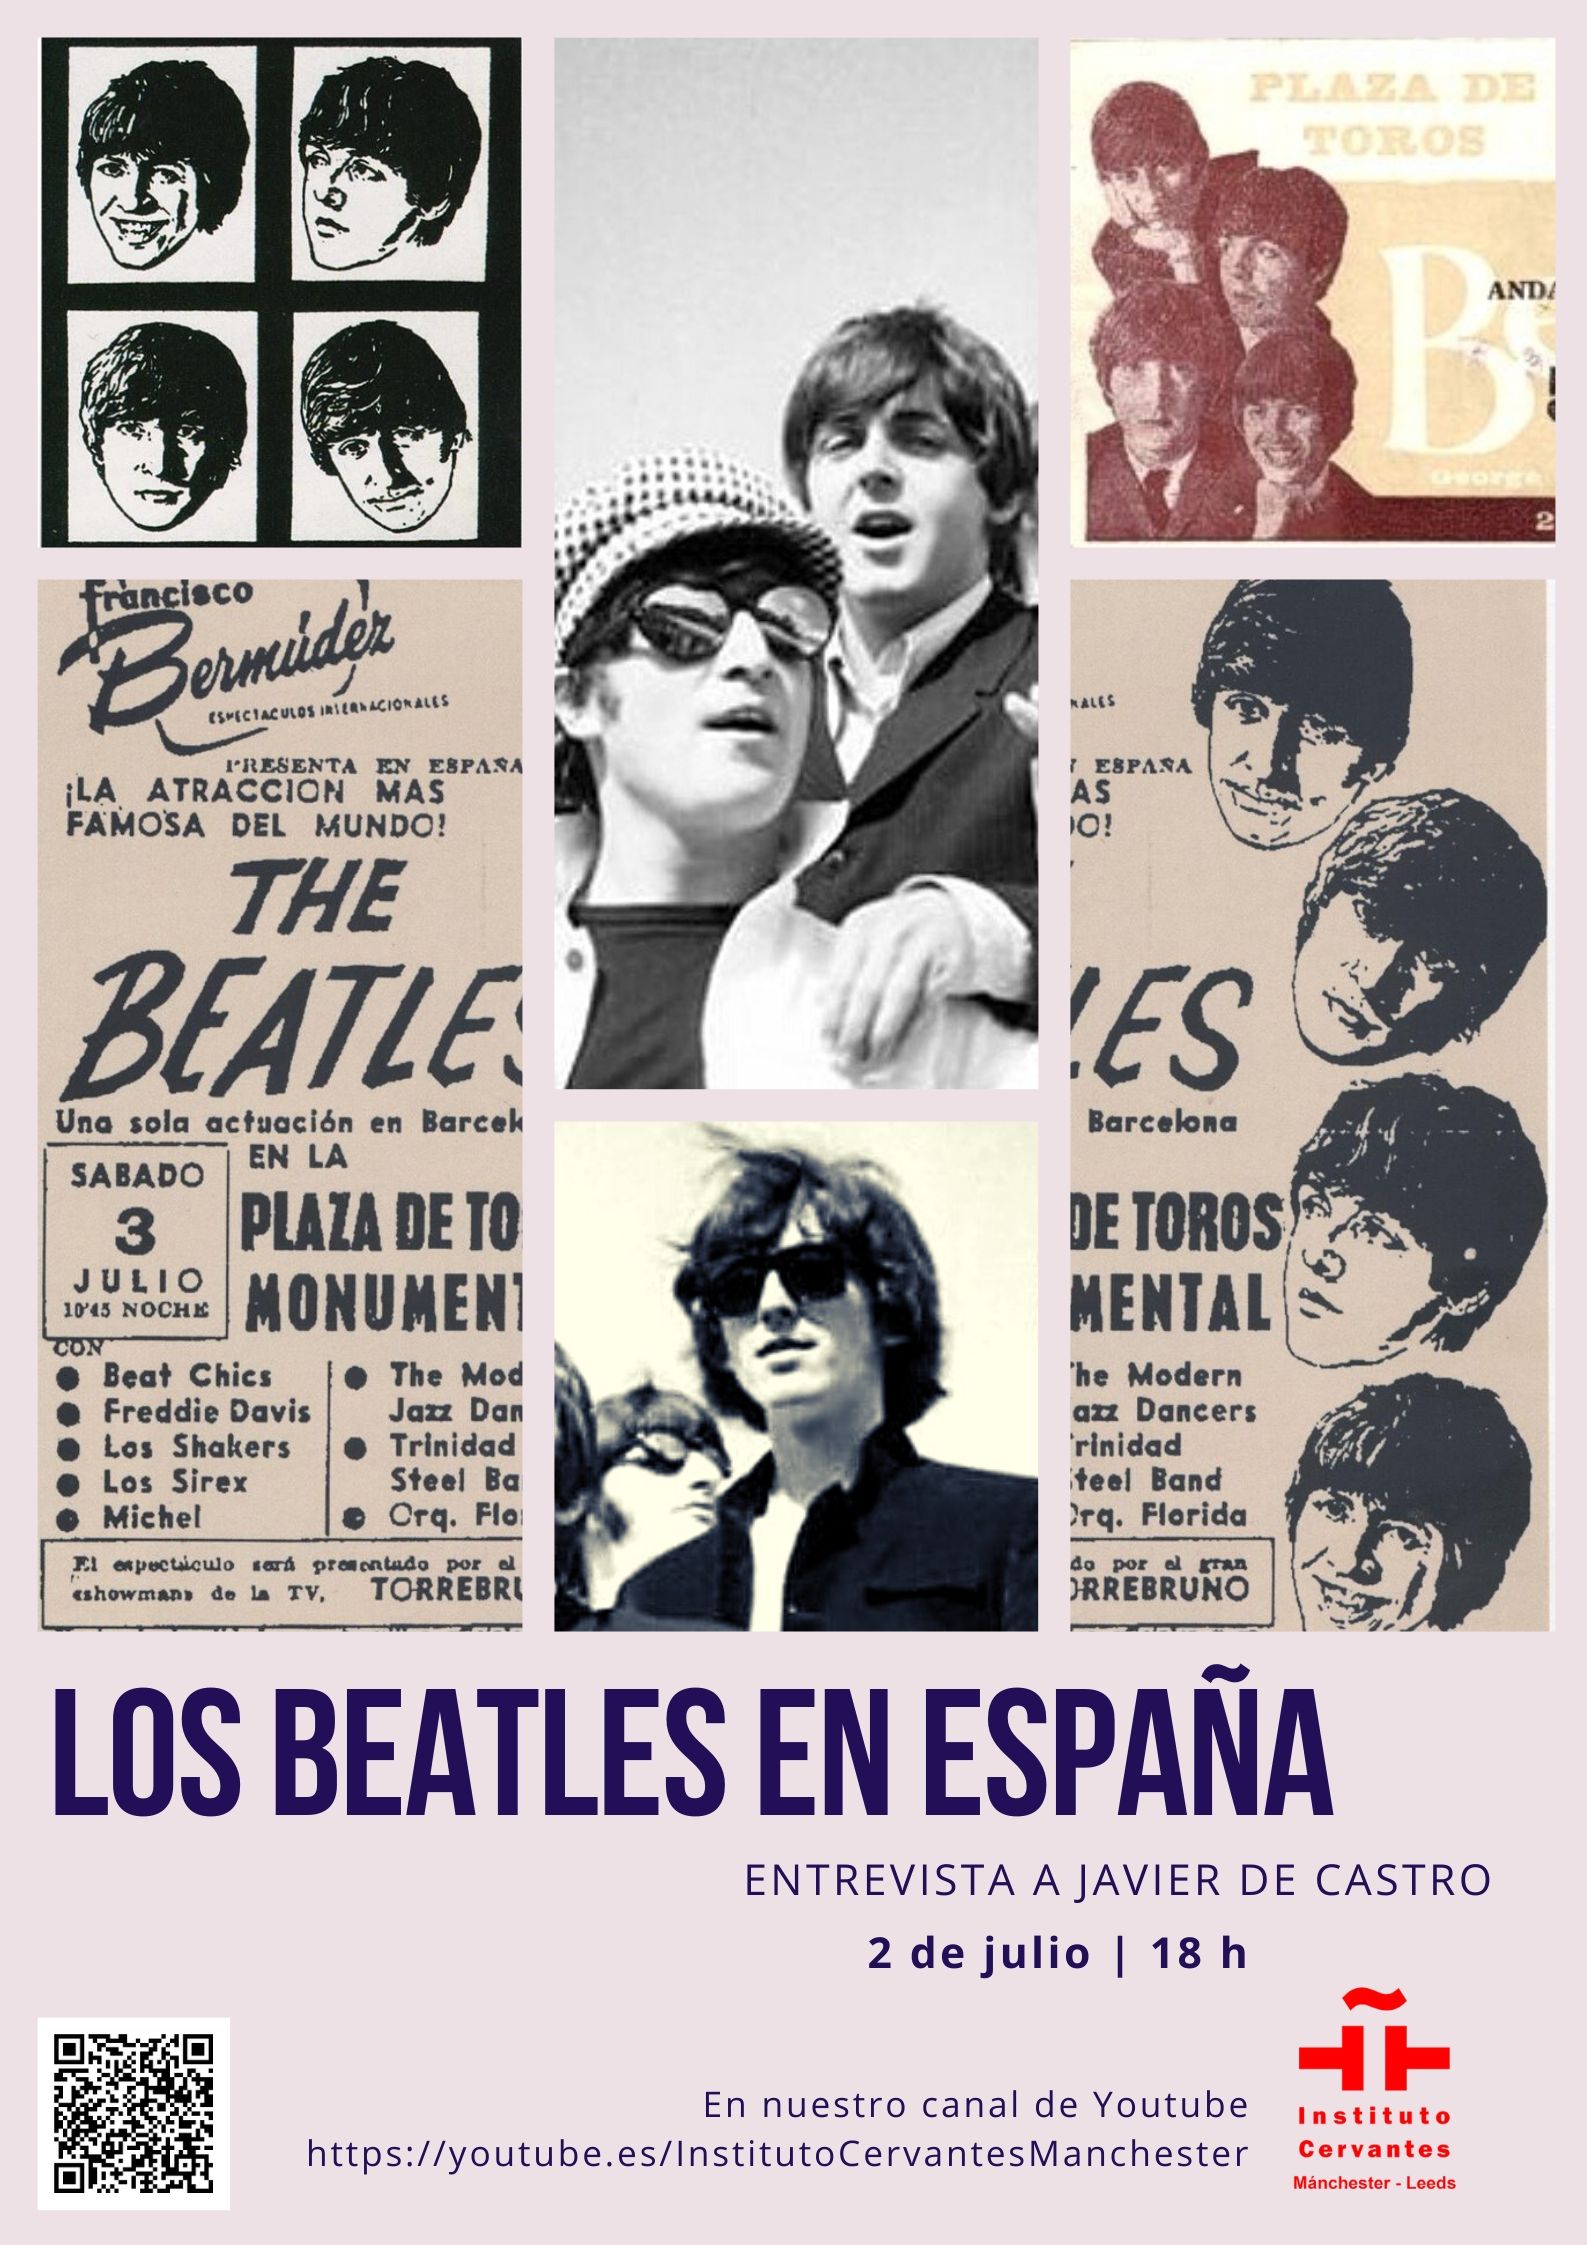 The Beatles & Spain